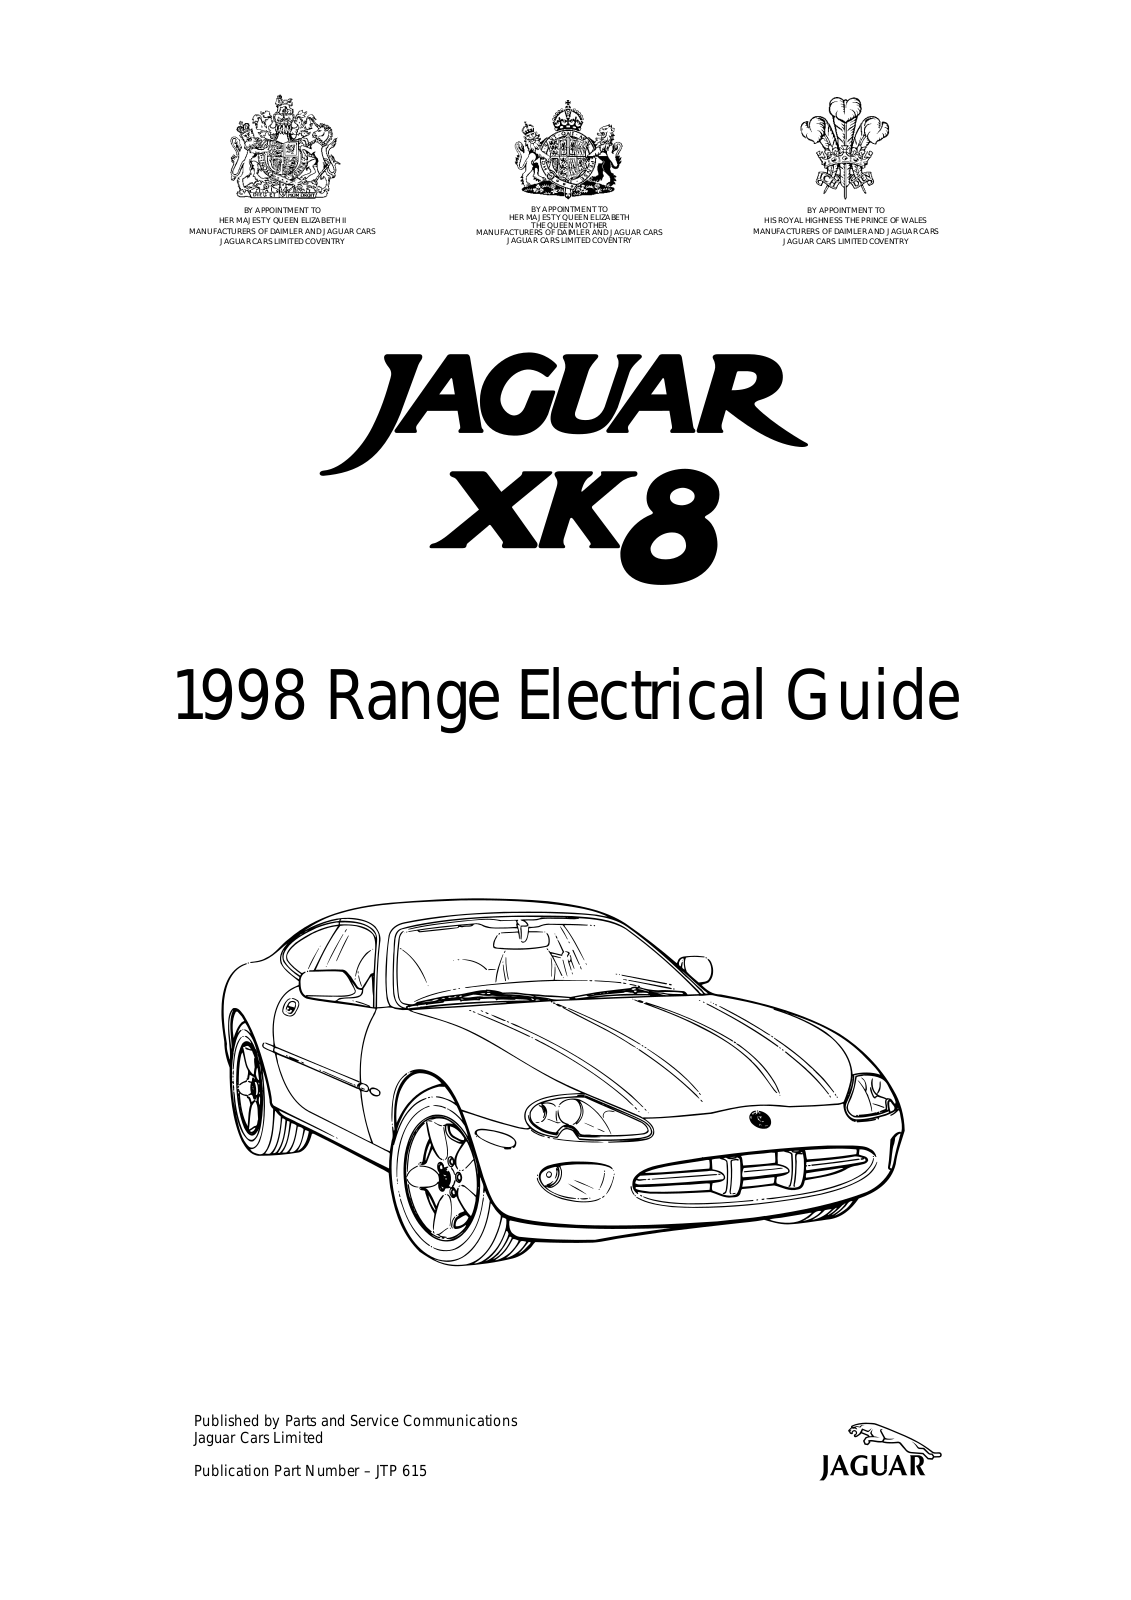 Jaguar XK8 User Manual